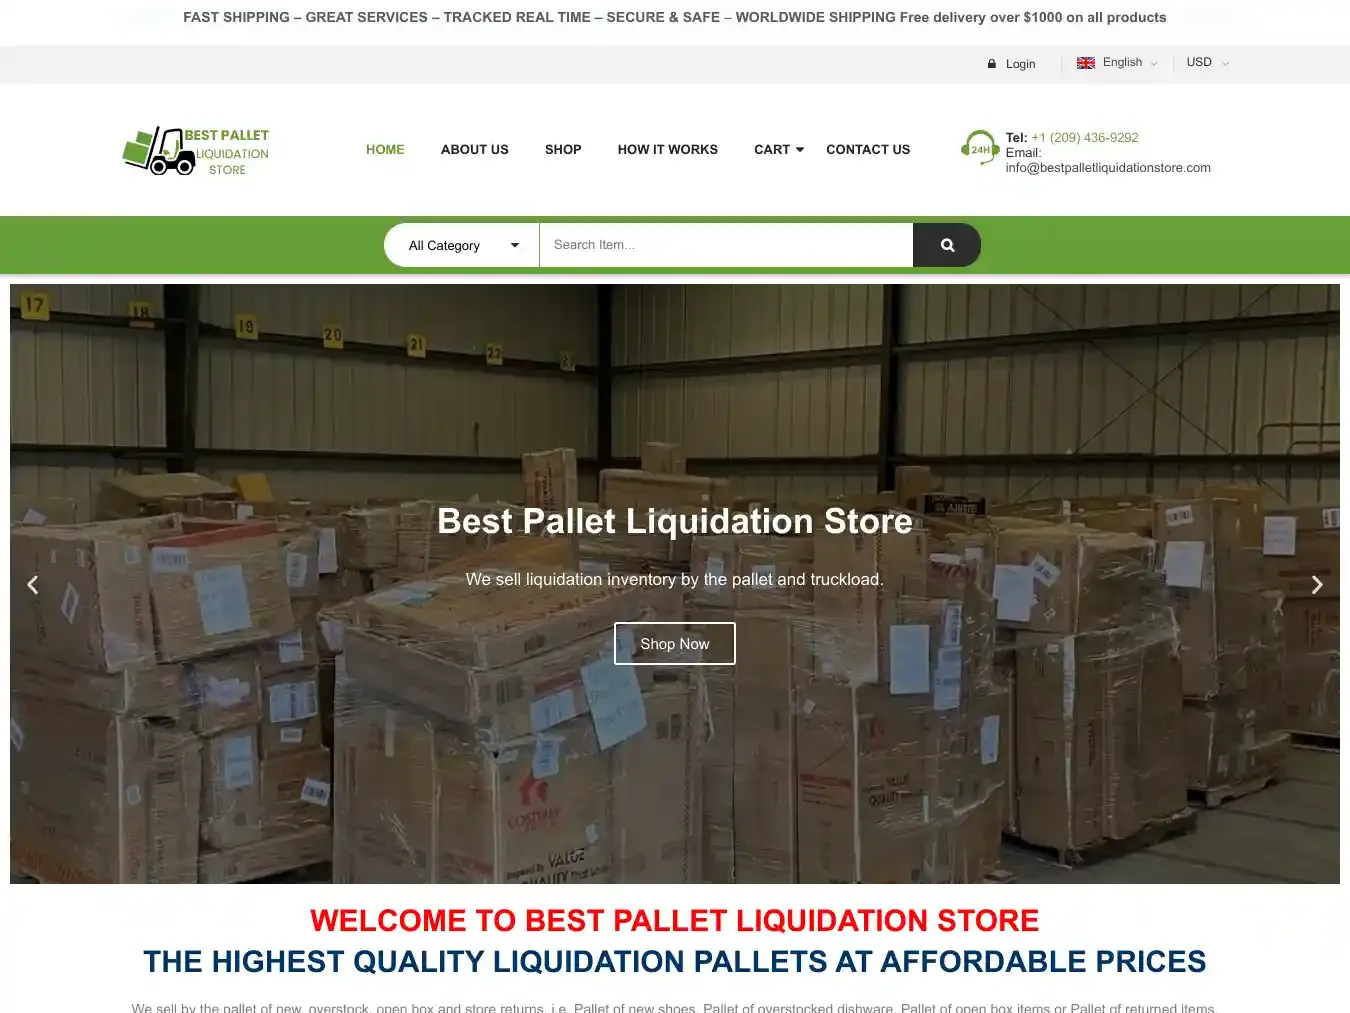 Bestpalletliquidationstore.com Fraudulent Liquidation website.